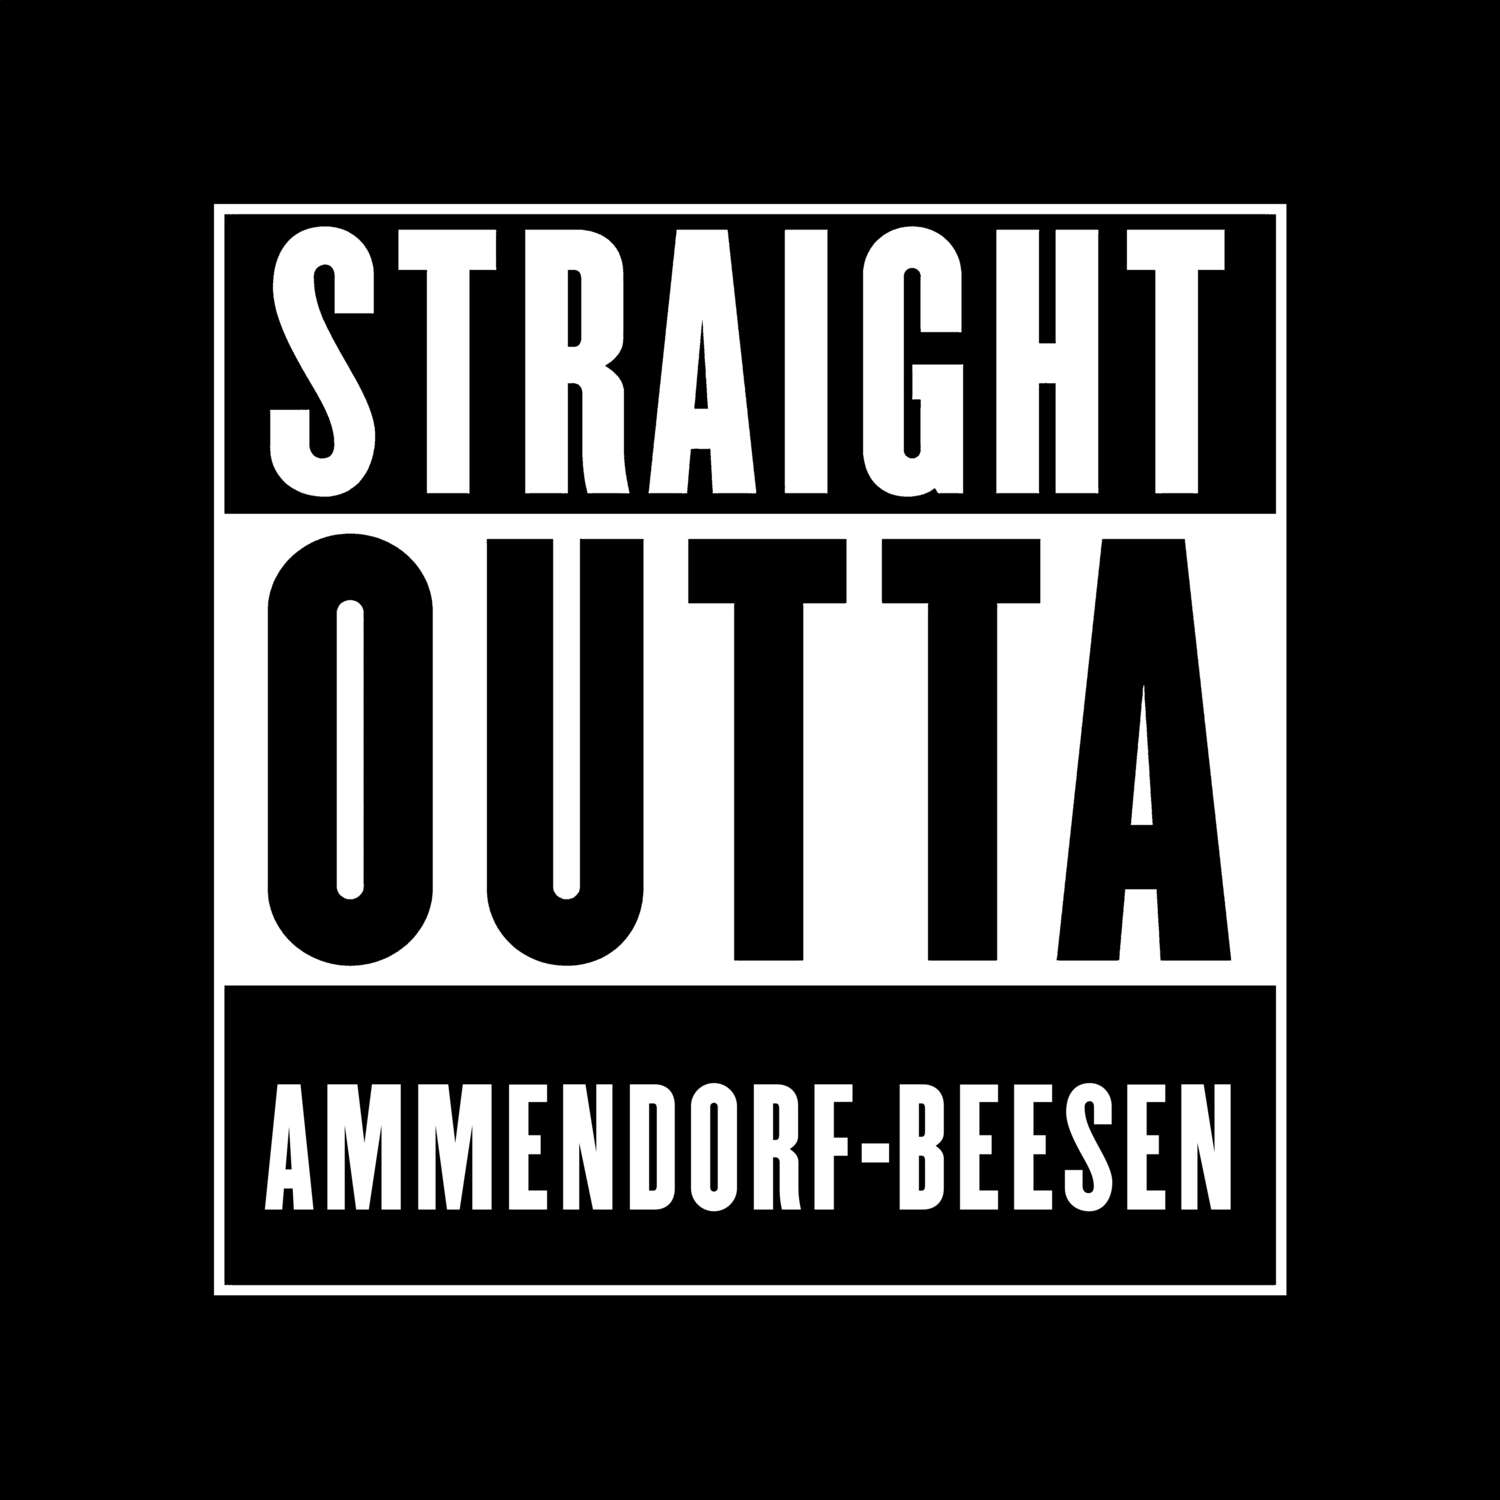 Ammendorf-Beesen T-Shirt »Straight Outta«